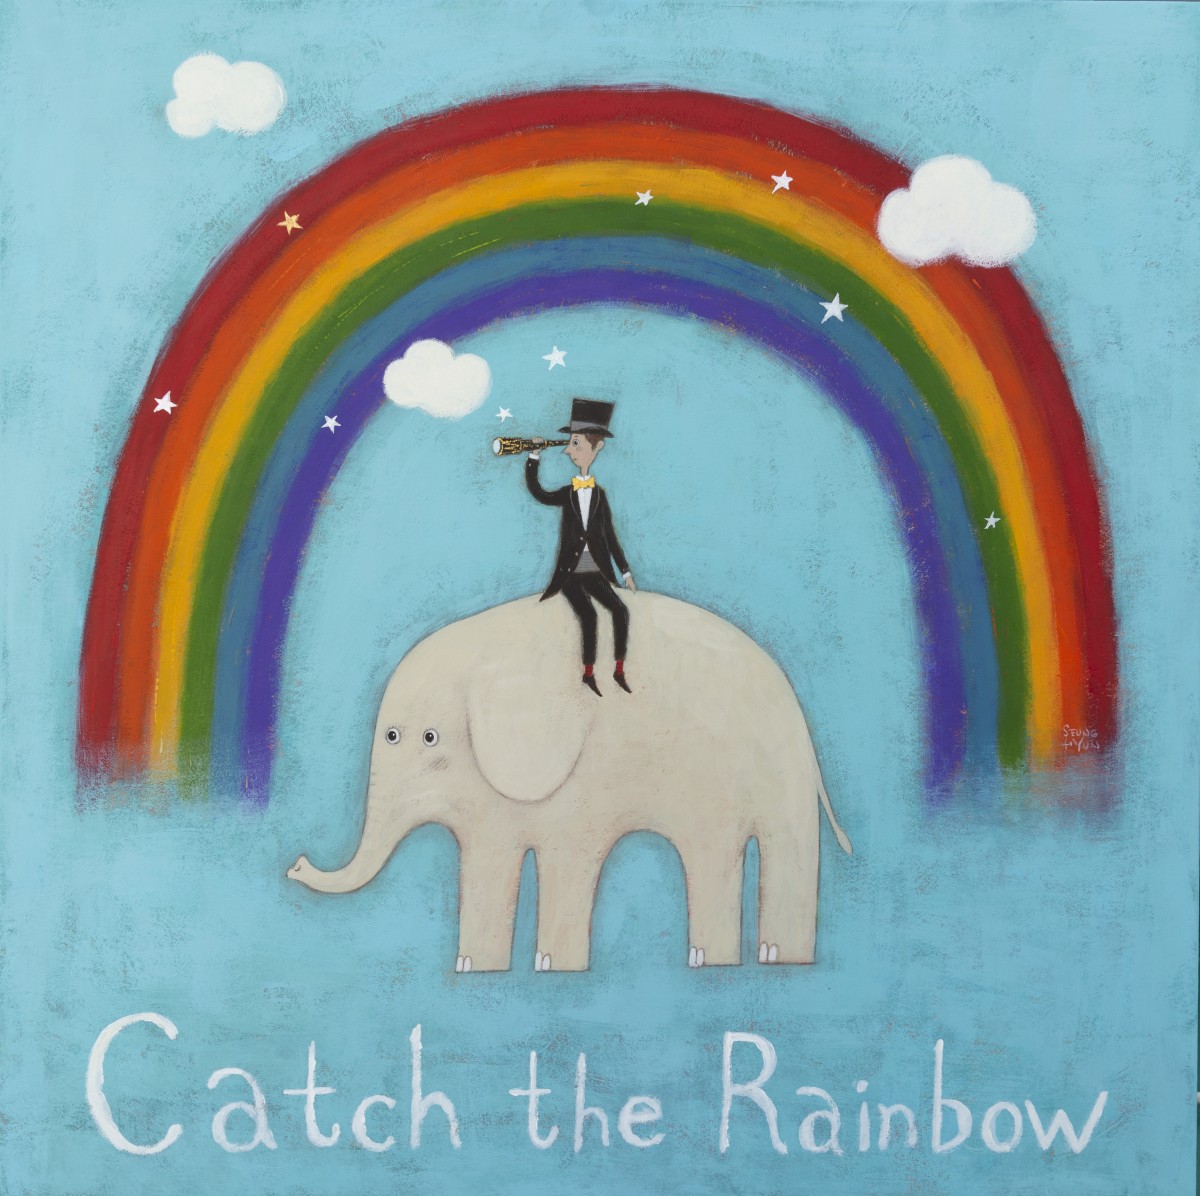 임승현, Catch the rainbow, 62x62cm, 한지에 과슈, 2022